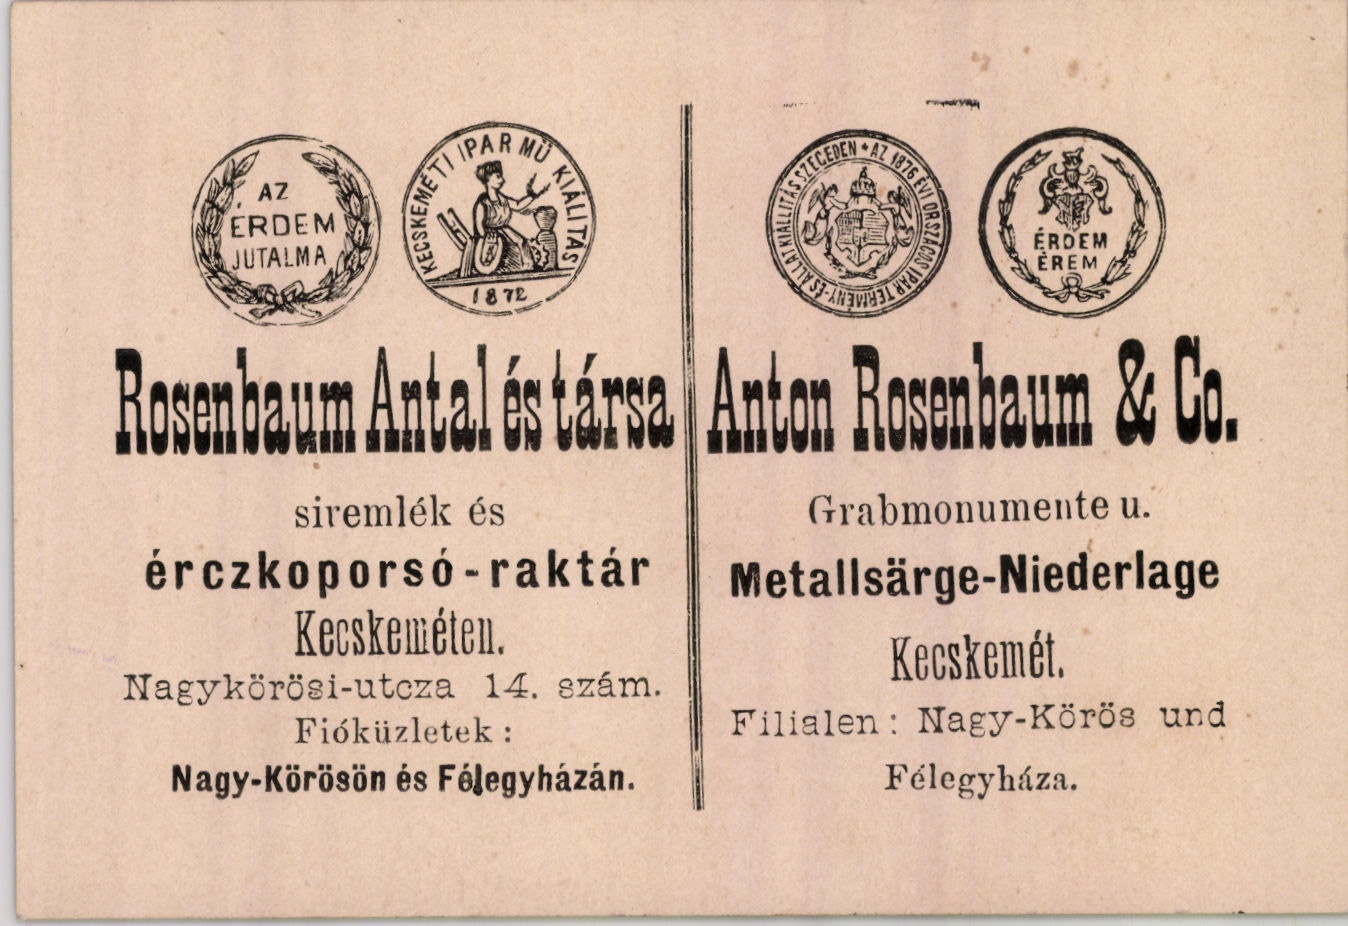 Rosenbaum Antal és társa, síremlék és érczkoporsó-raktár (Magyar Kereskedelmi és Vendéglátóipari Múzeum CC BY-NC-SA)